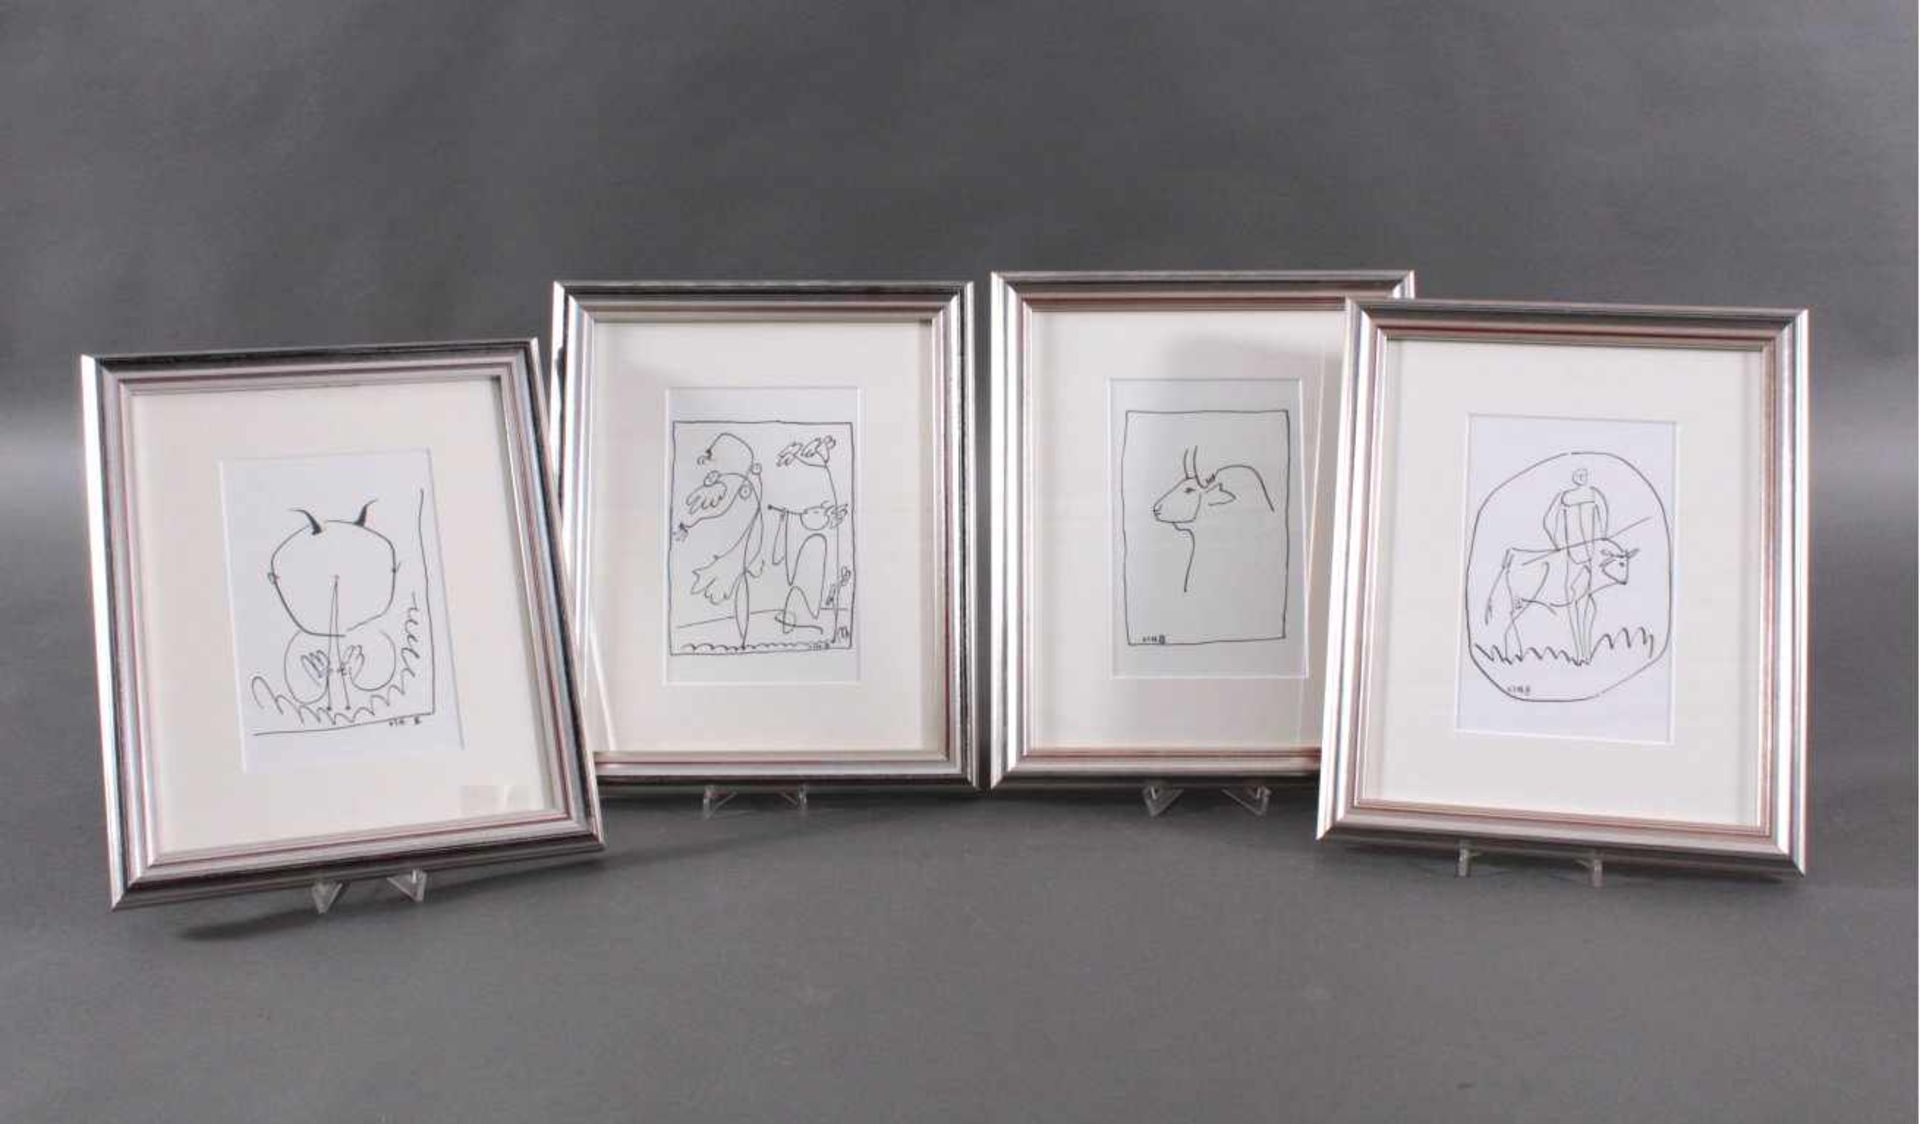 4 Lithographische AbzügeSkizzen aus dem Picasso/Tardieu Zyklus, 1958. Alle